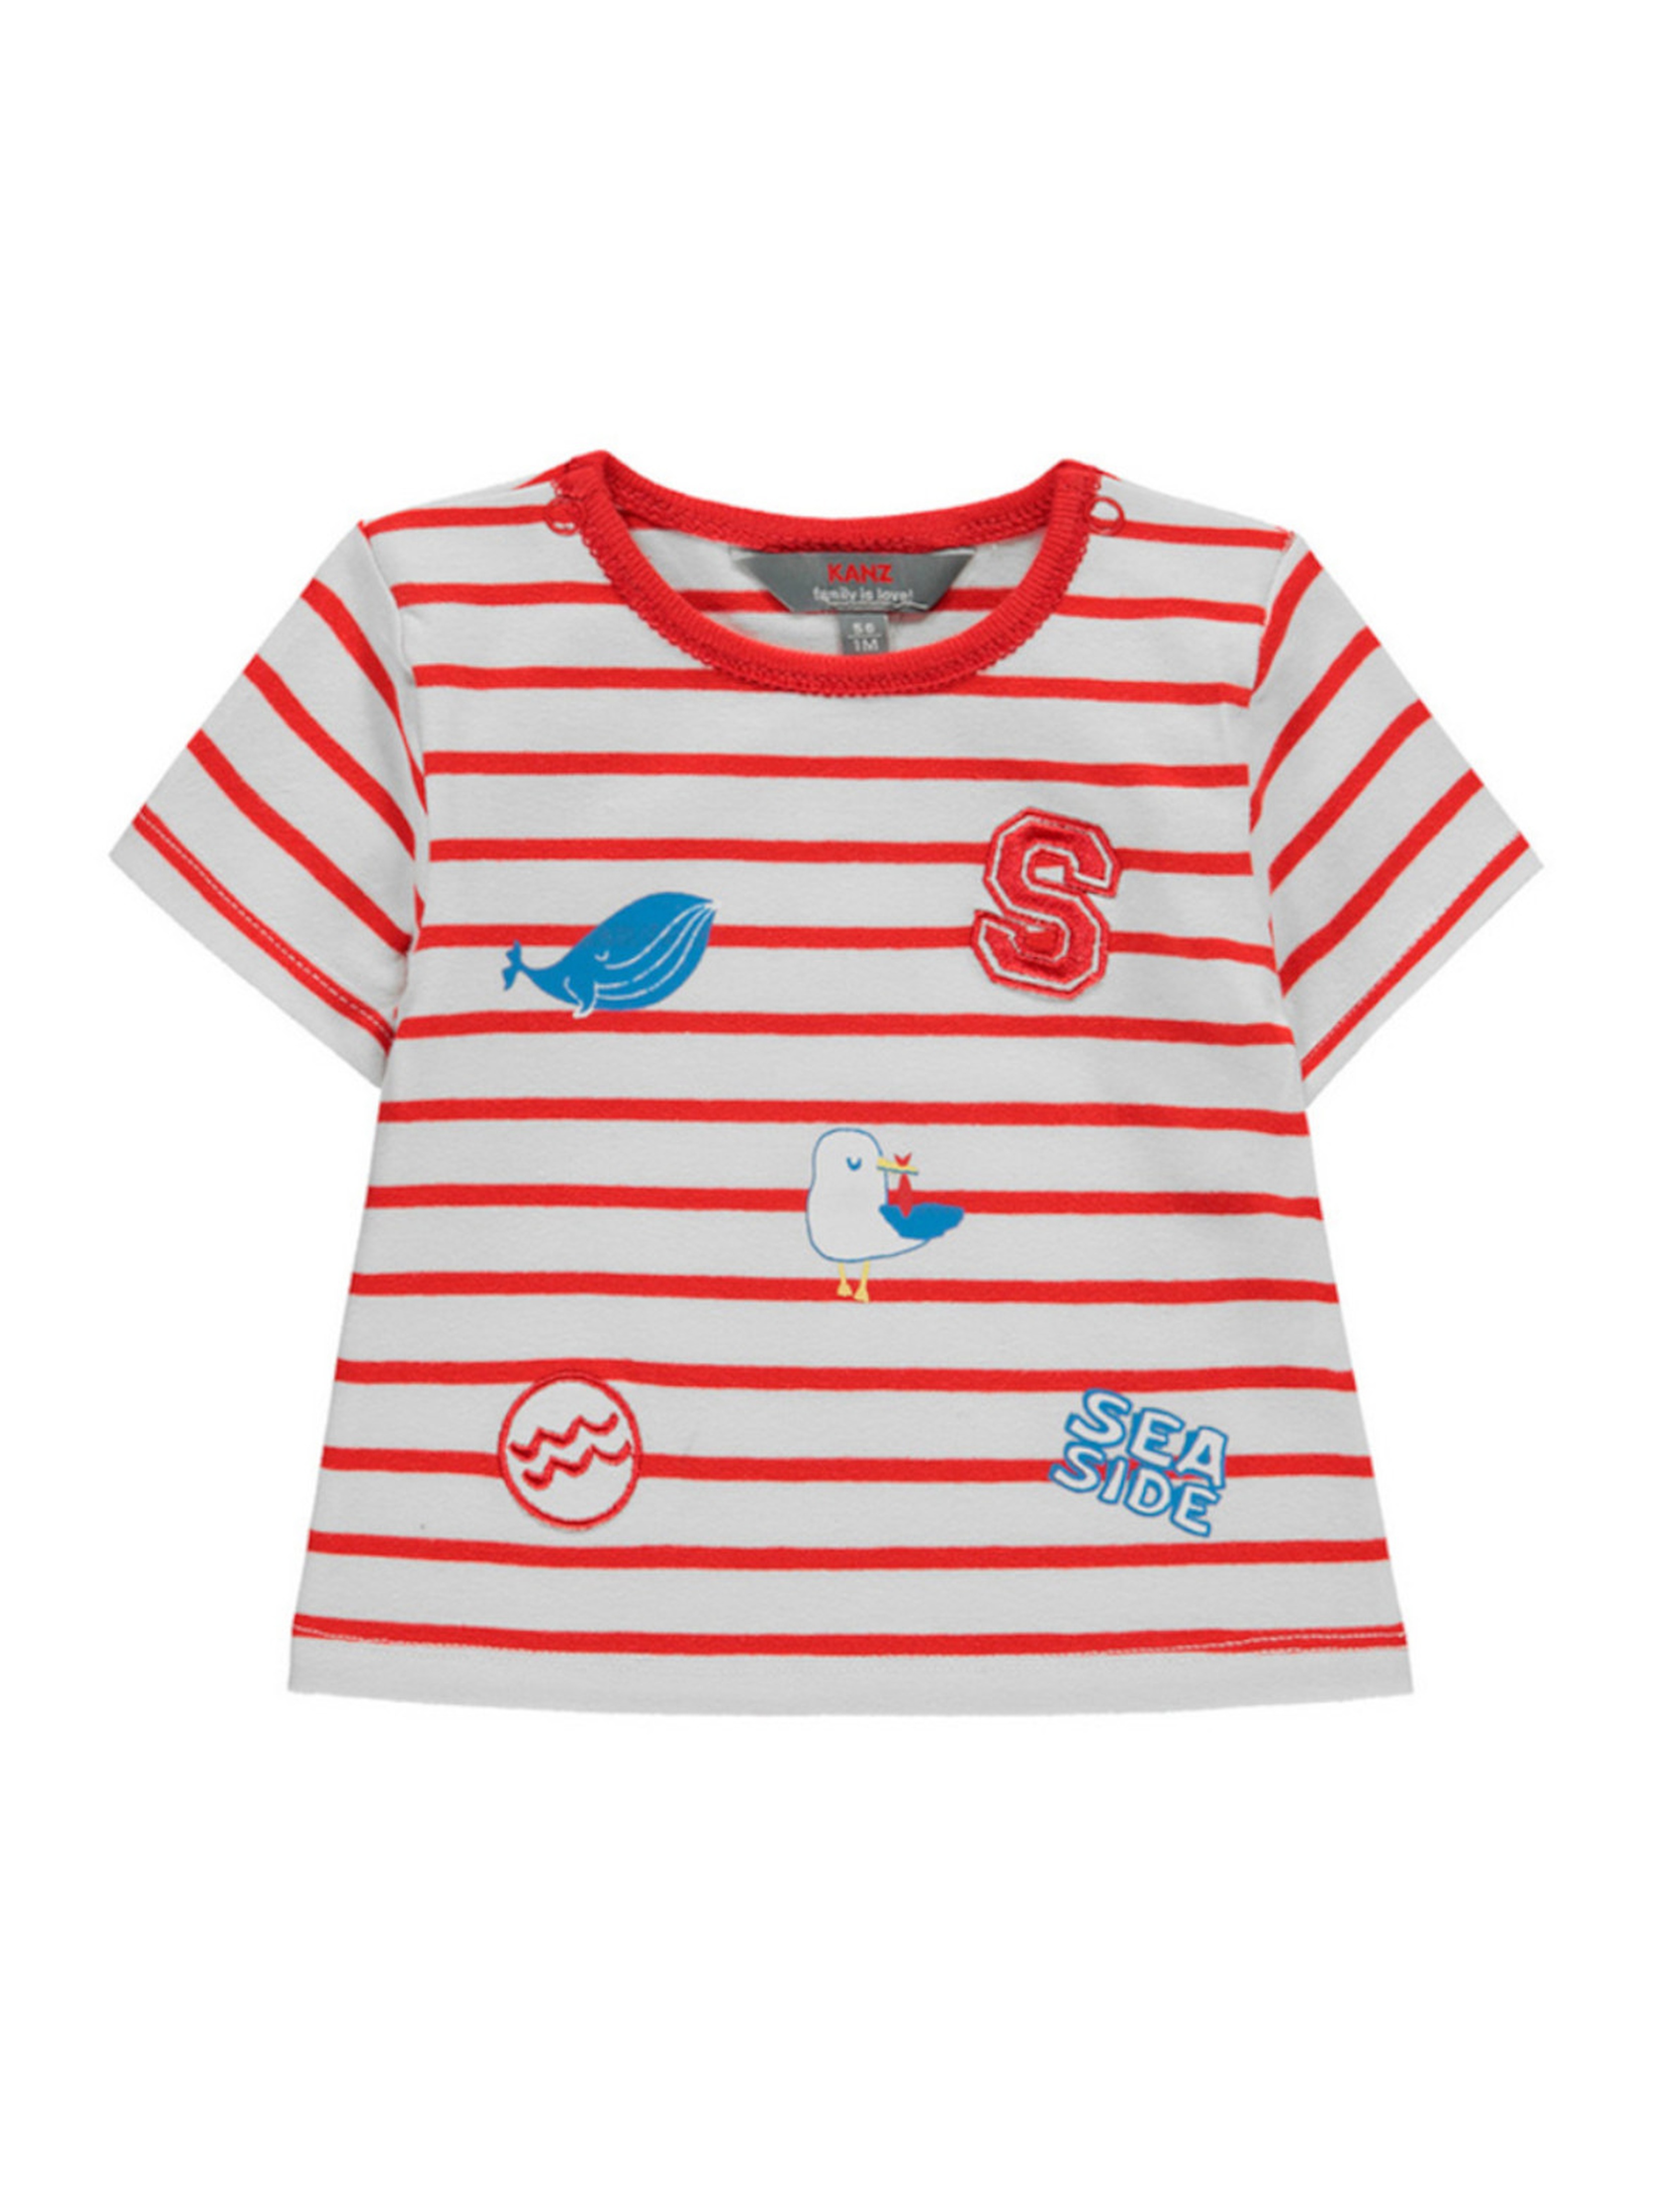 T-shirt niemowlęcy czerwono-biały paski